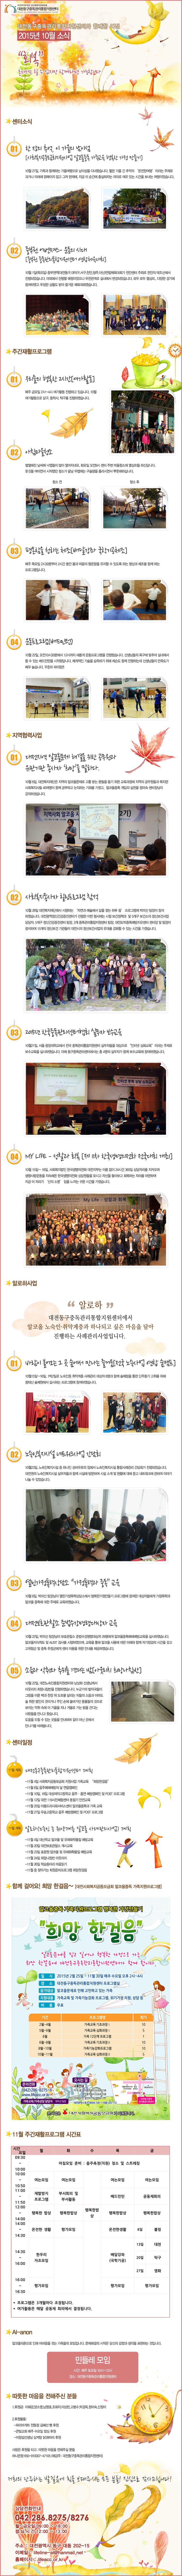 대전동구중독관리통합지원센터 2015년 10월 뉴스레터입니다.